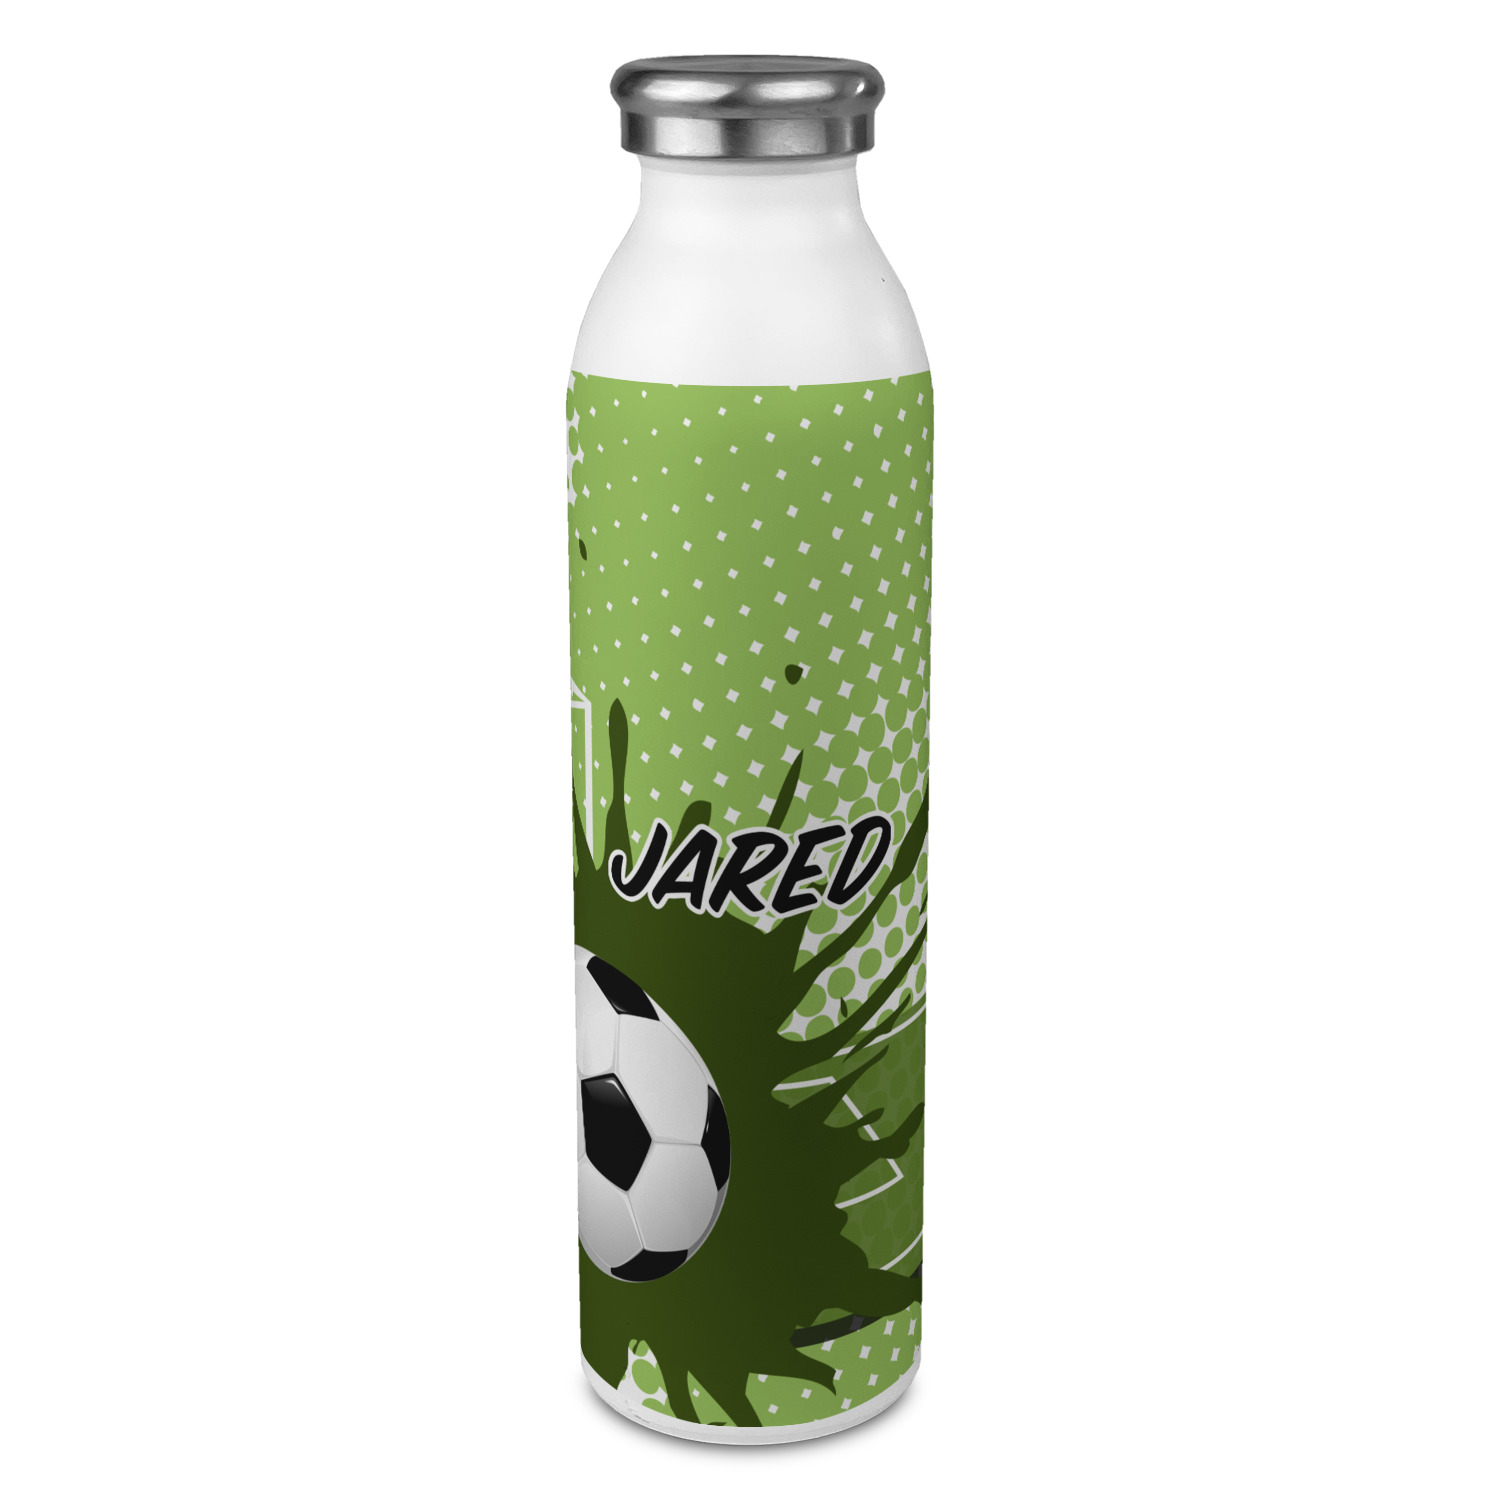 https://www.youcustomizeit.com/common/MAKE/1833419/Soccer-20oz-Water-Bottles-Full-Print-Front-Main.jpg?lm=1665527440